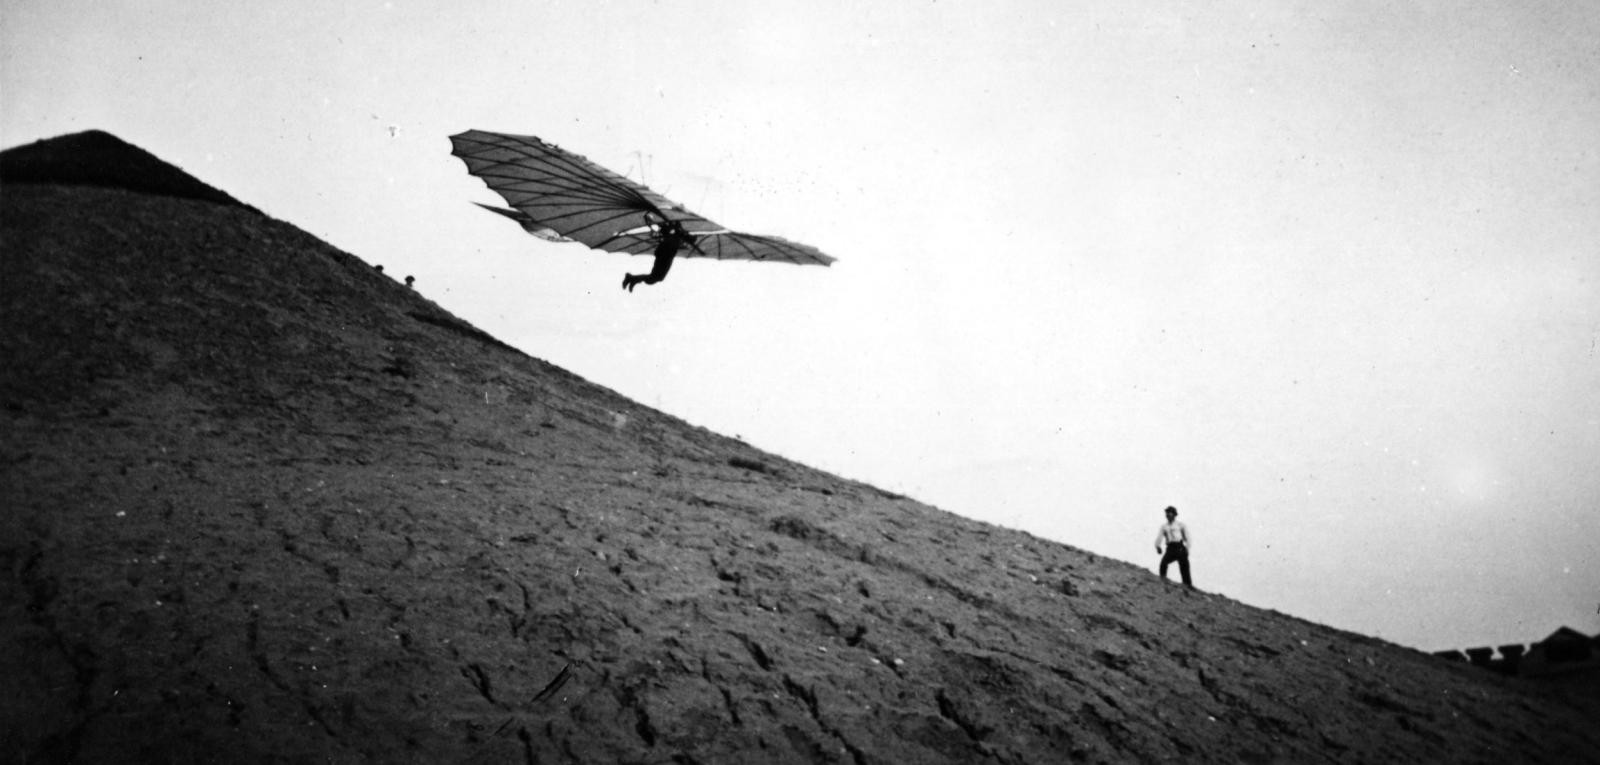 Немецкий летающий человек, пионер авиации Отто Лилиенталь пилотирует один из своих новаторских планеров